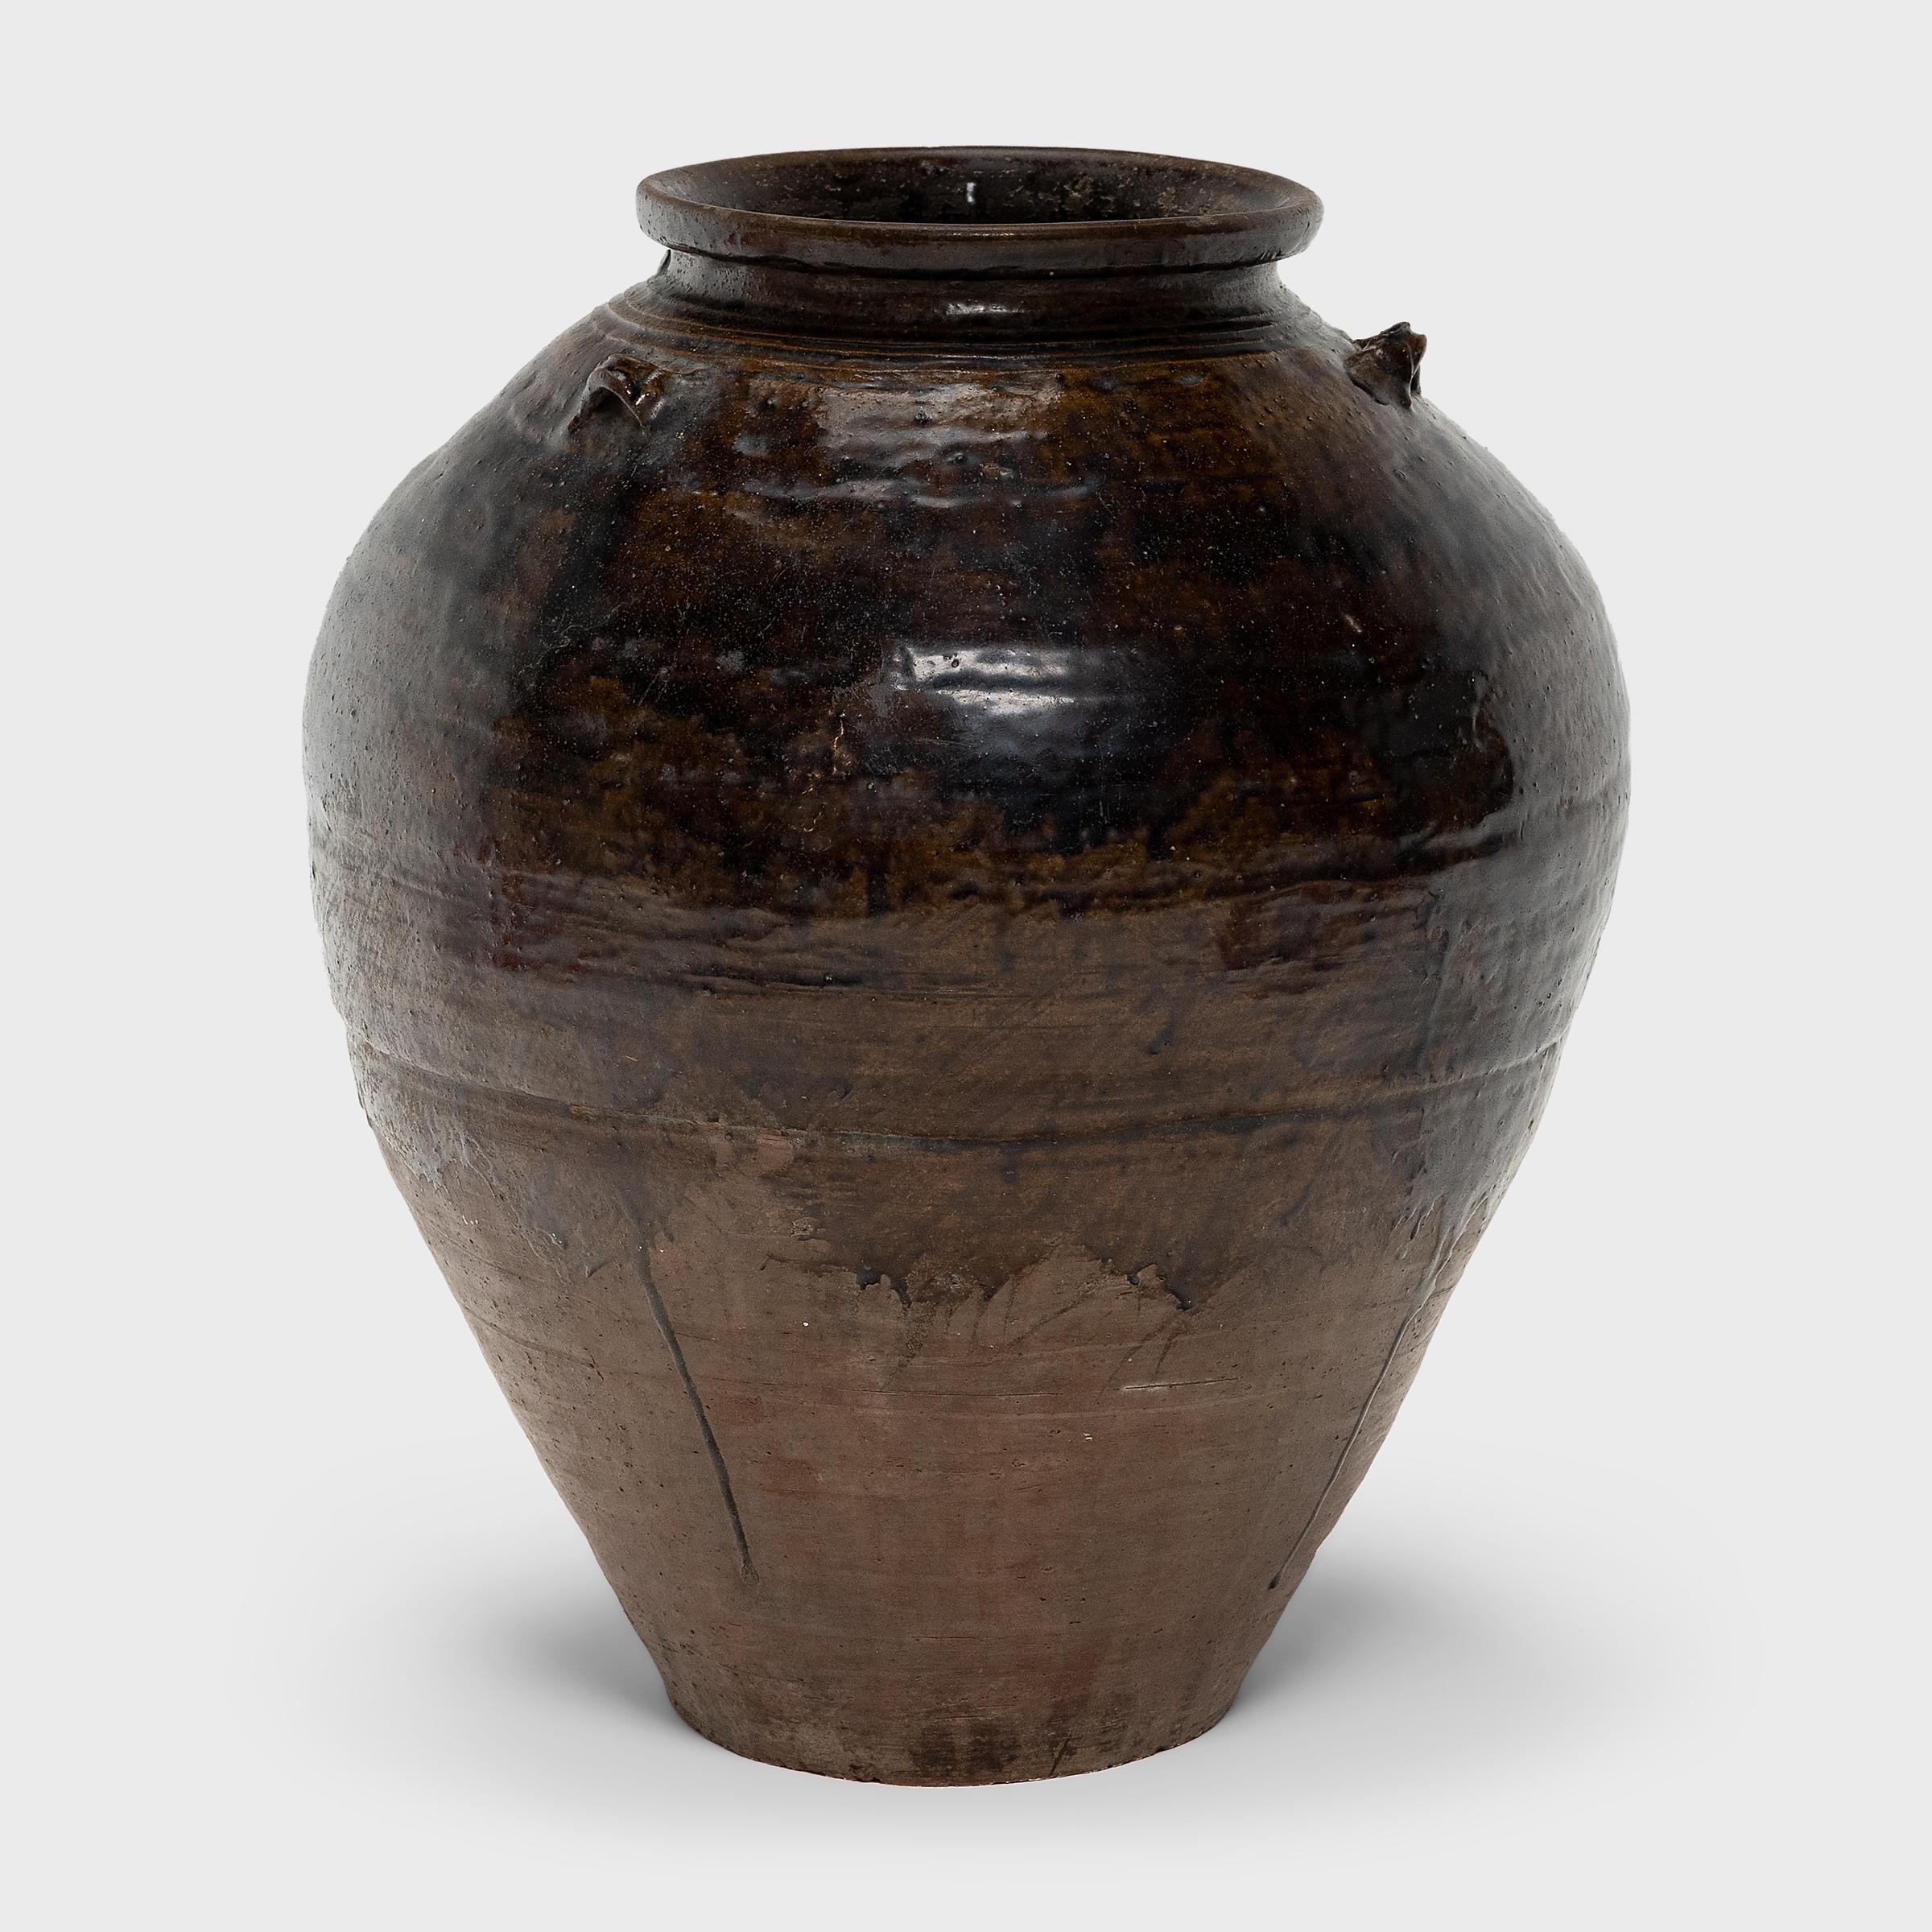 Dieses große, glasierte Steingutgefäß ist ein japanisches Vorratsgefäß (tsubo) aus der Meiji-Ära, das zur Aufbewahrung von Reiswein, Wasser oder auch Teeblättern und Gewürzen verwendet wurde. Diese Art von ungeschliffenen, eiförmigen Gefäßen war in